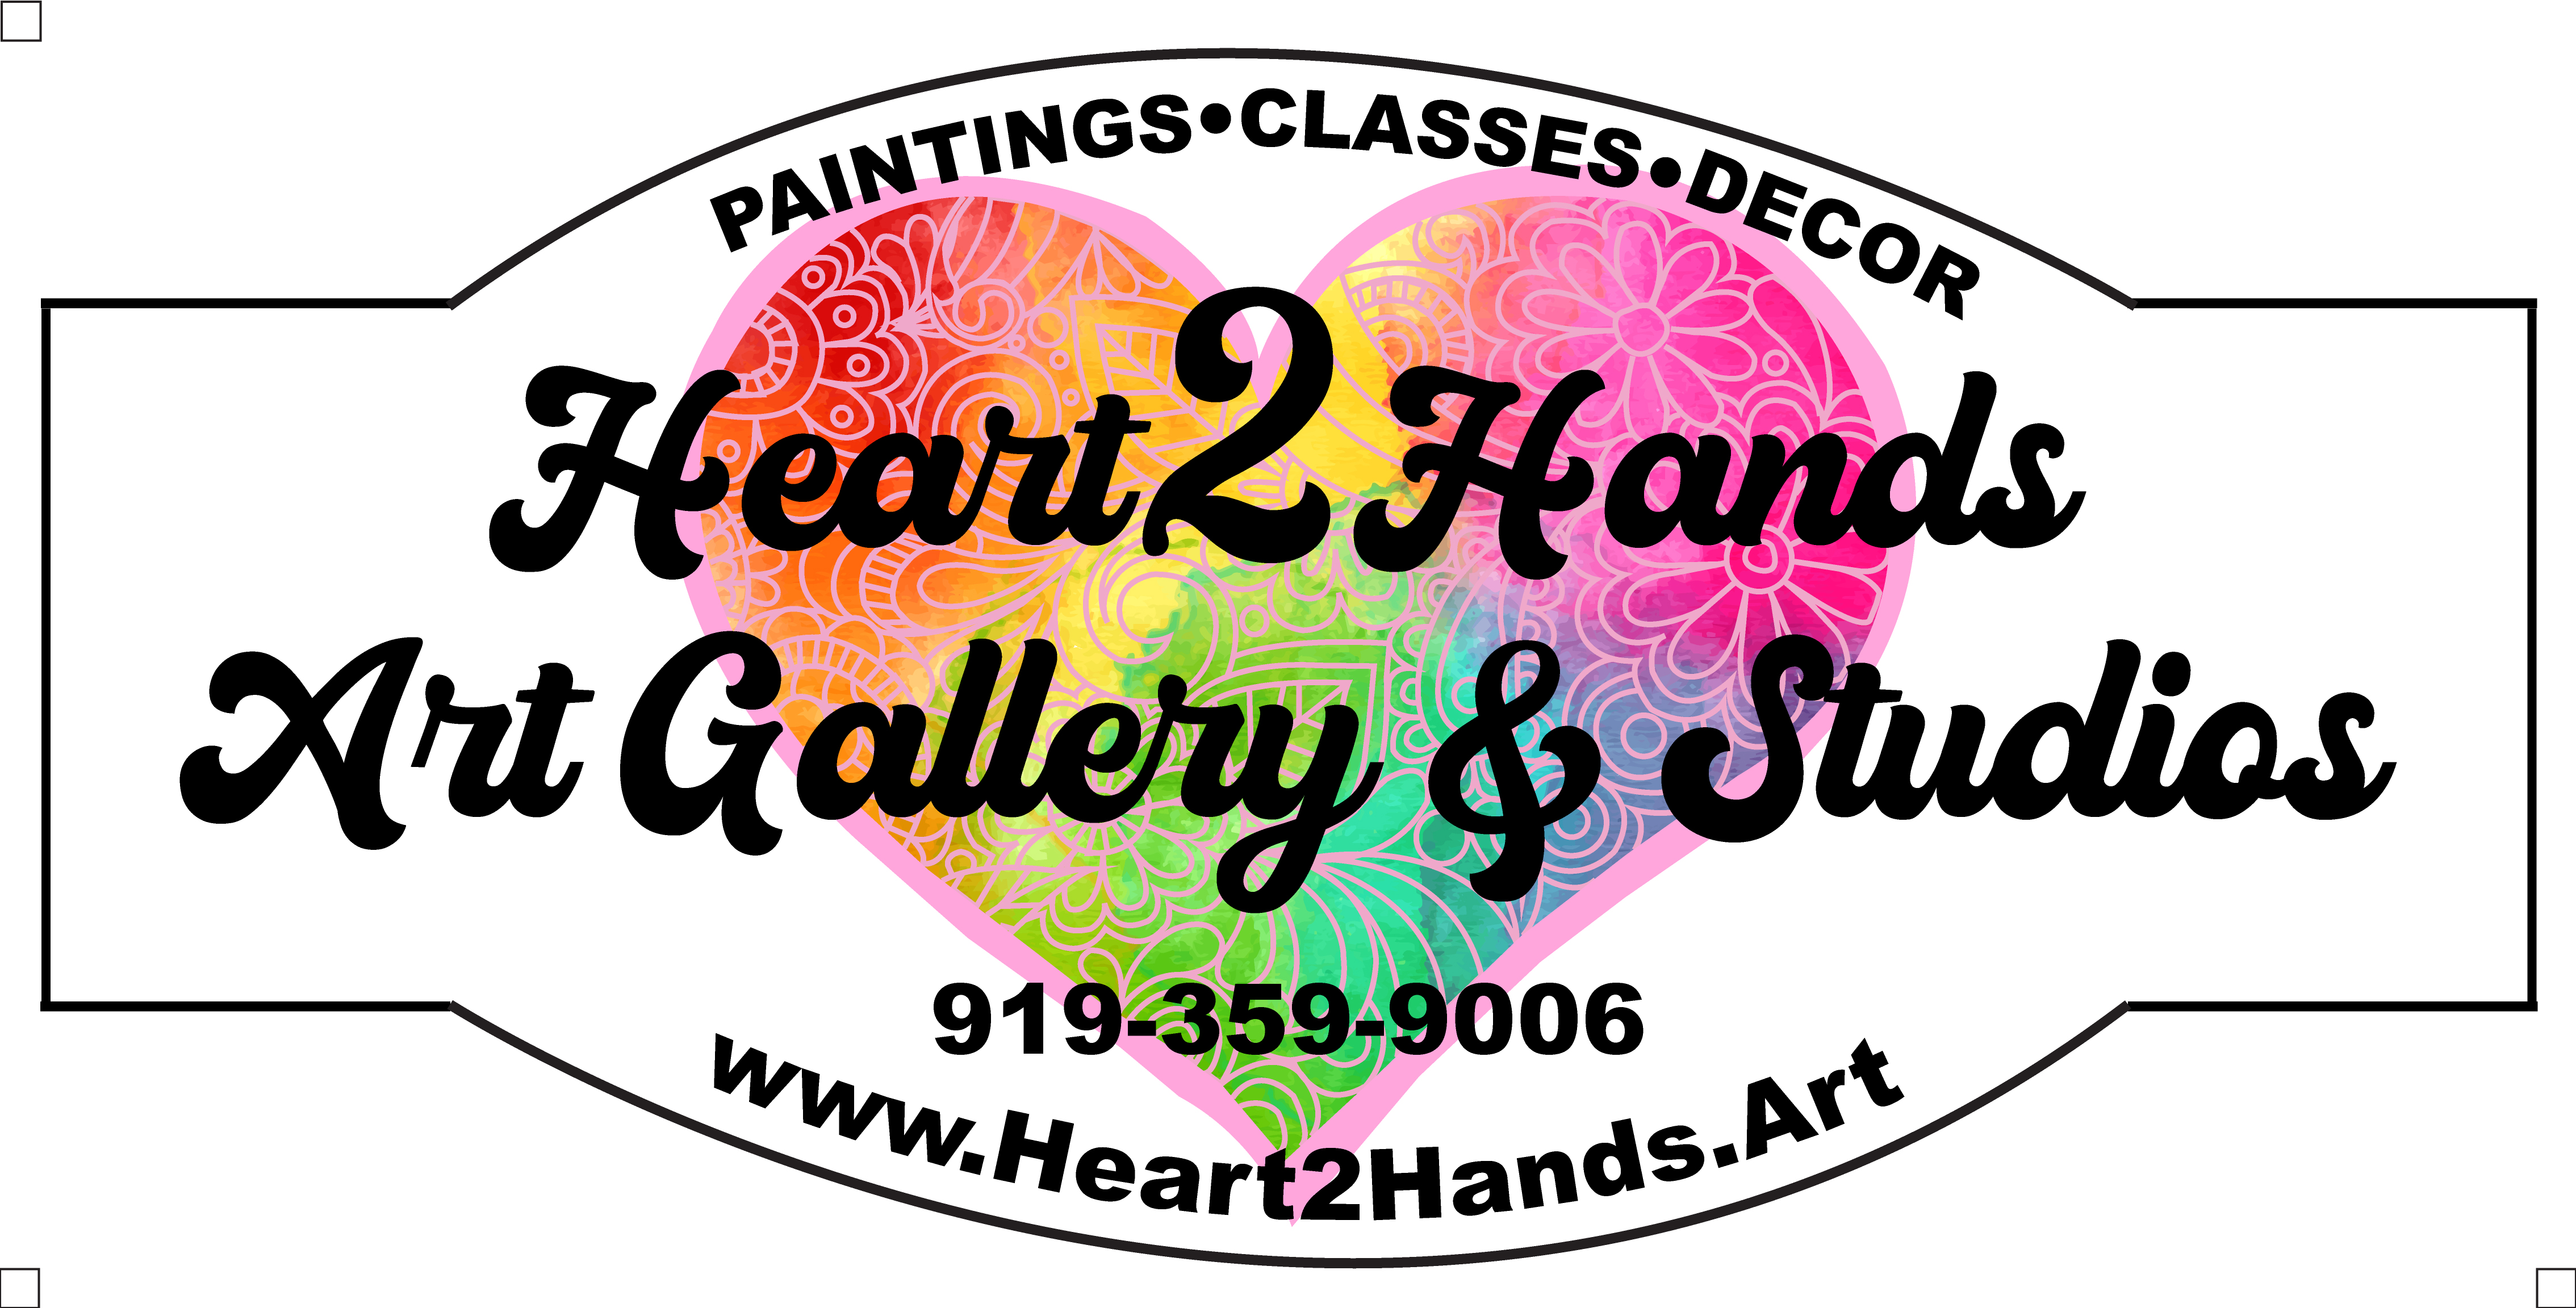 Heart2Hands Art Gallery and Studios